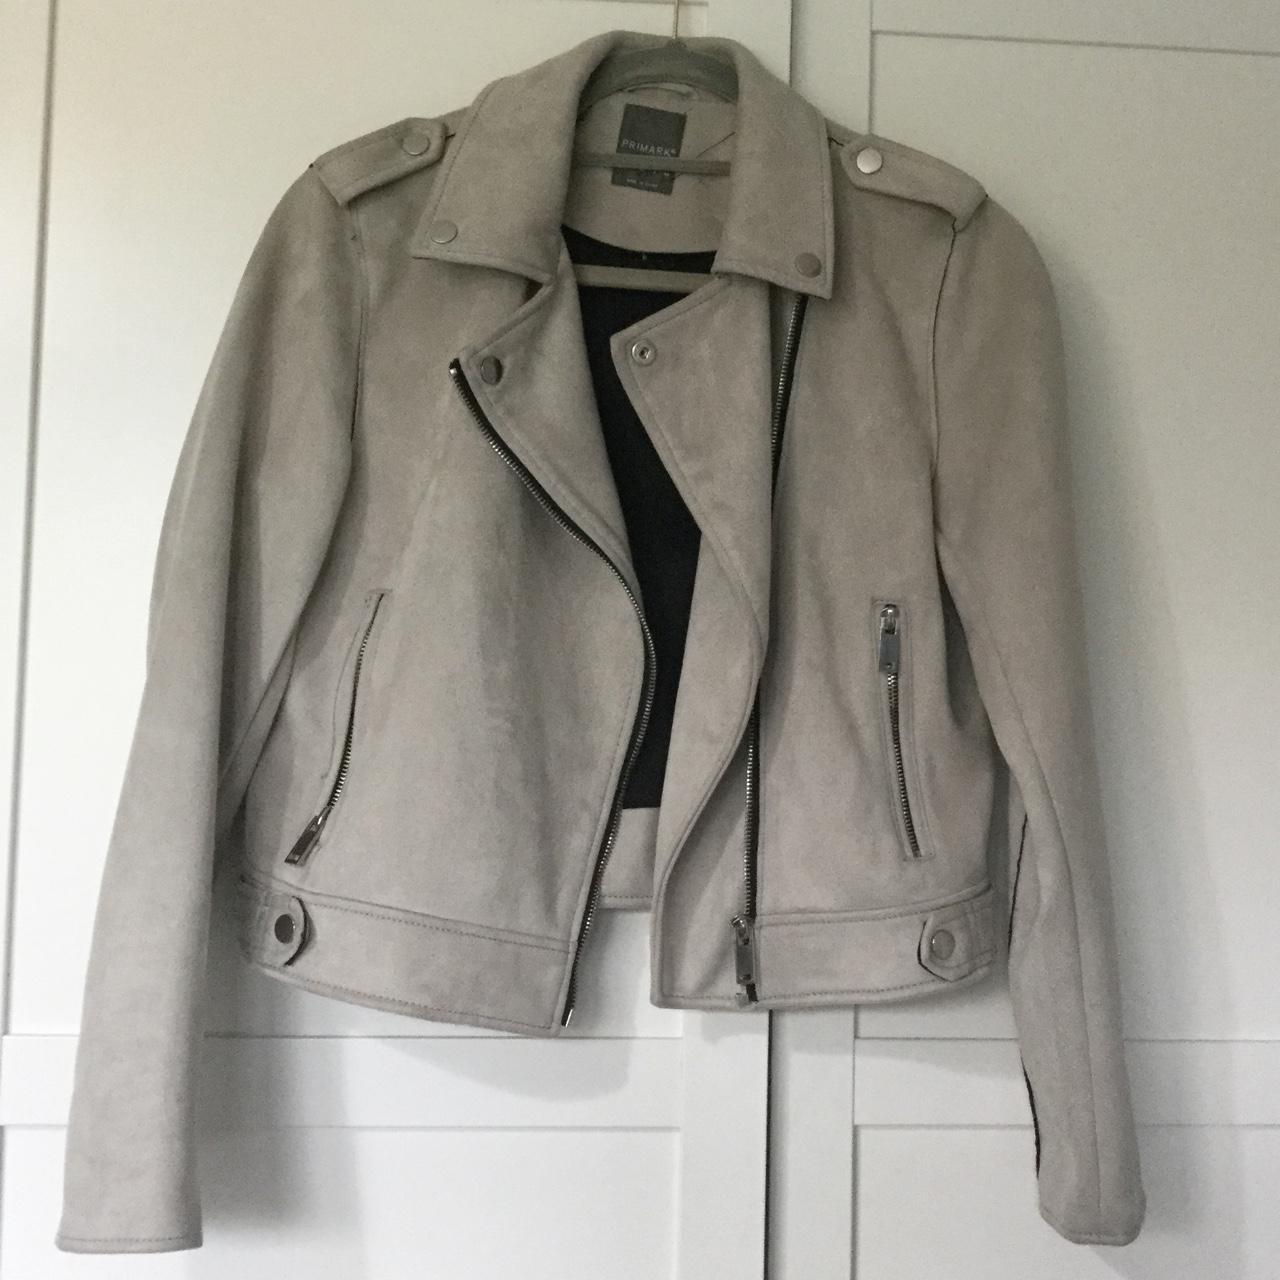 Grey suede jacket, Primark, Size 12 Great condition,... - Depop